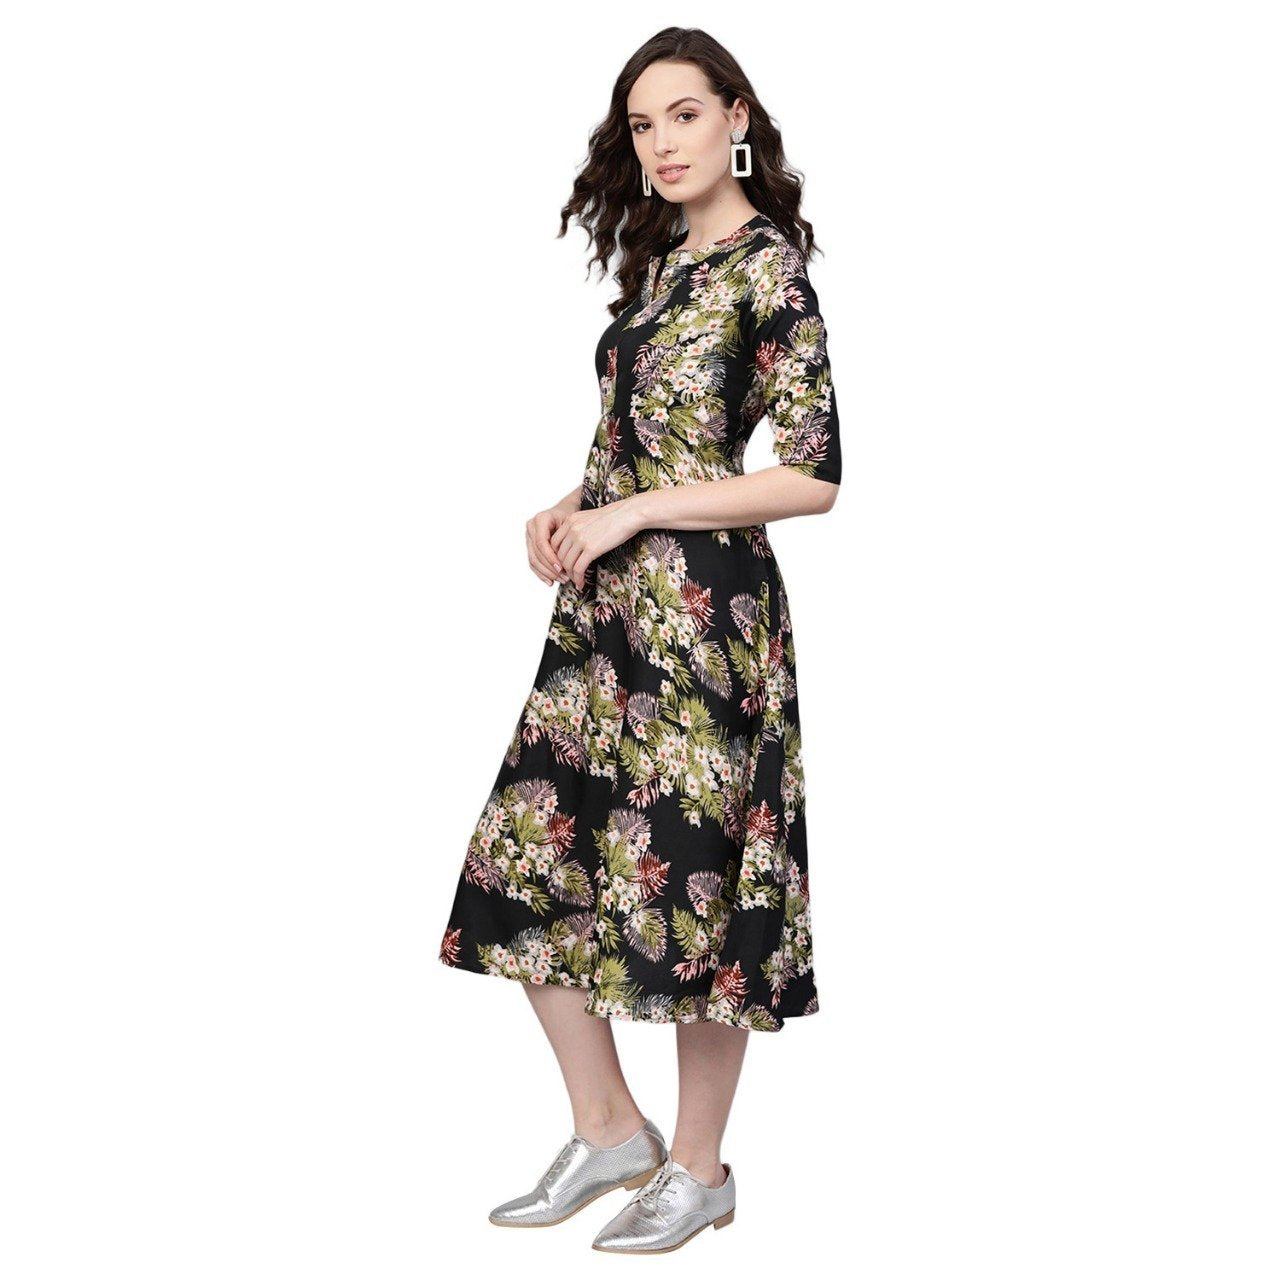 Women Blac Floral Printed Dress by Myshka (1 Pc Set)